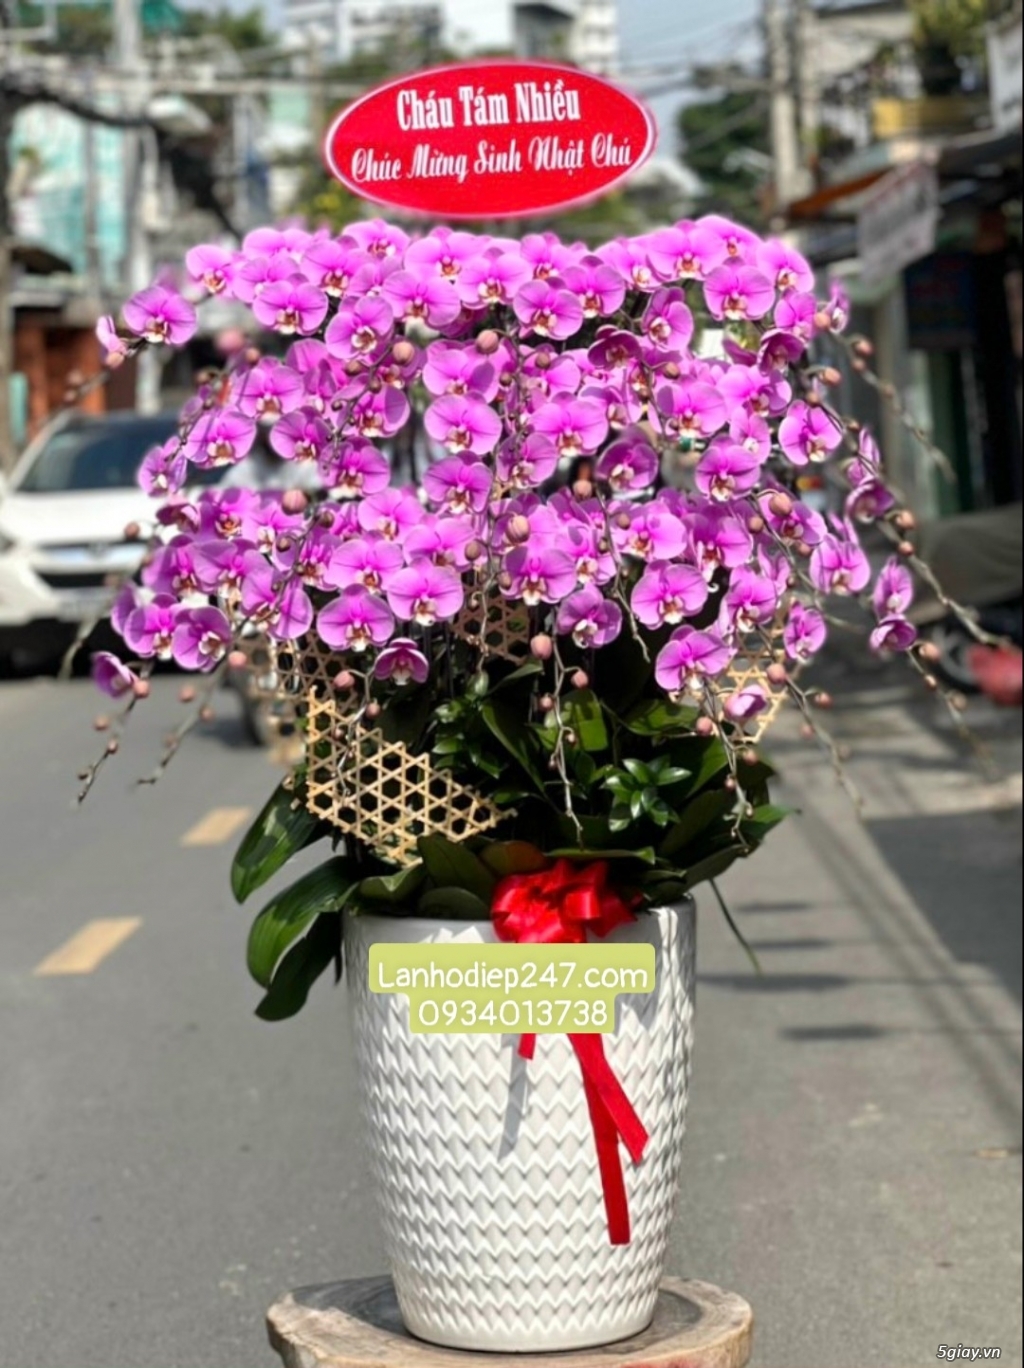 Shop hoa tuoi sai gon 24/7 chuyên cung cấp Lan Hồ Điệp hàng đầu tphcm - 11